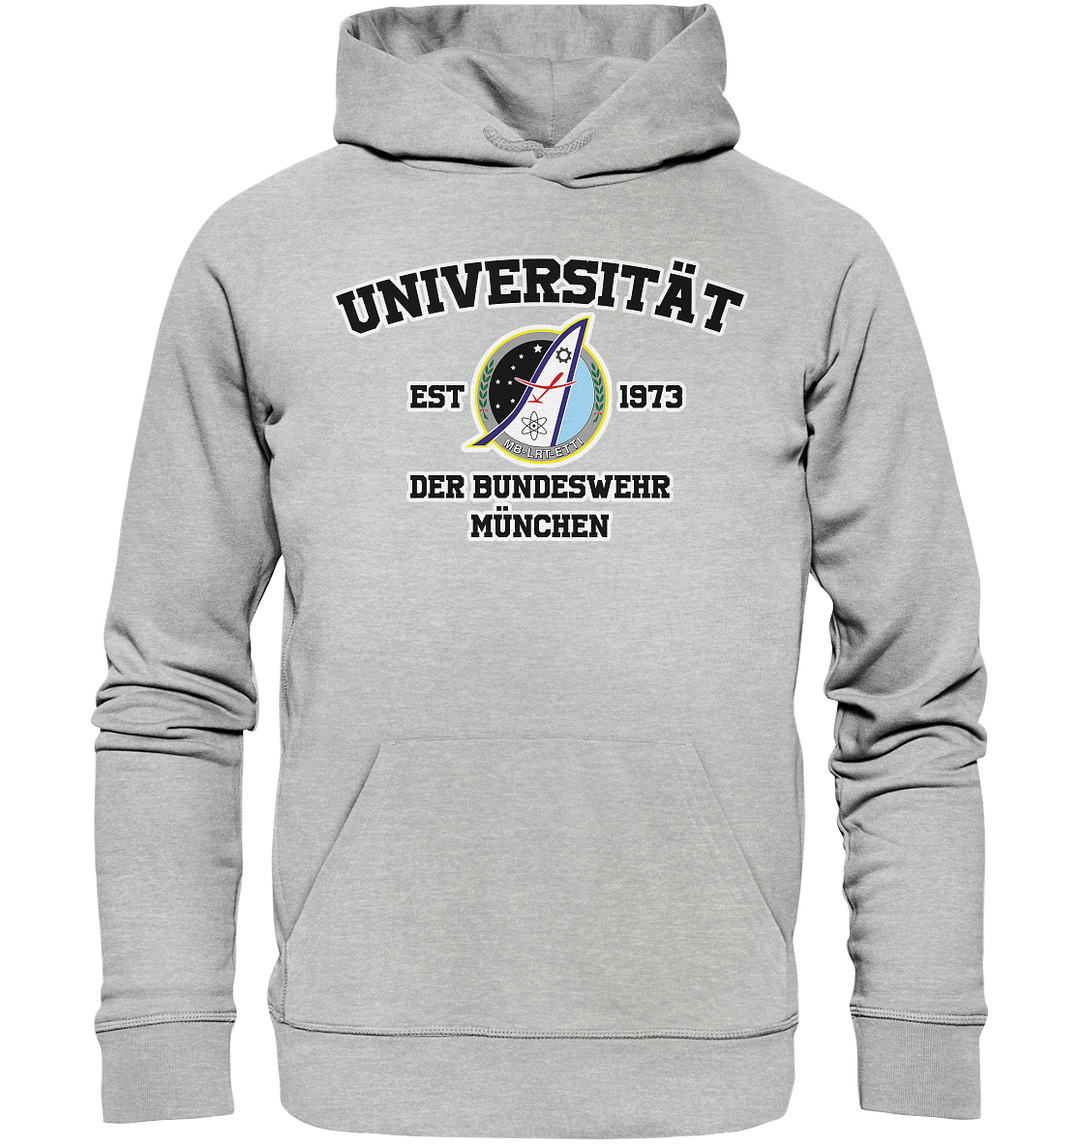 "Fachbereich A - University" - Premium Unisex Hoodie